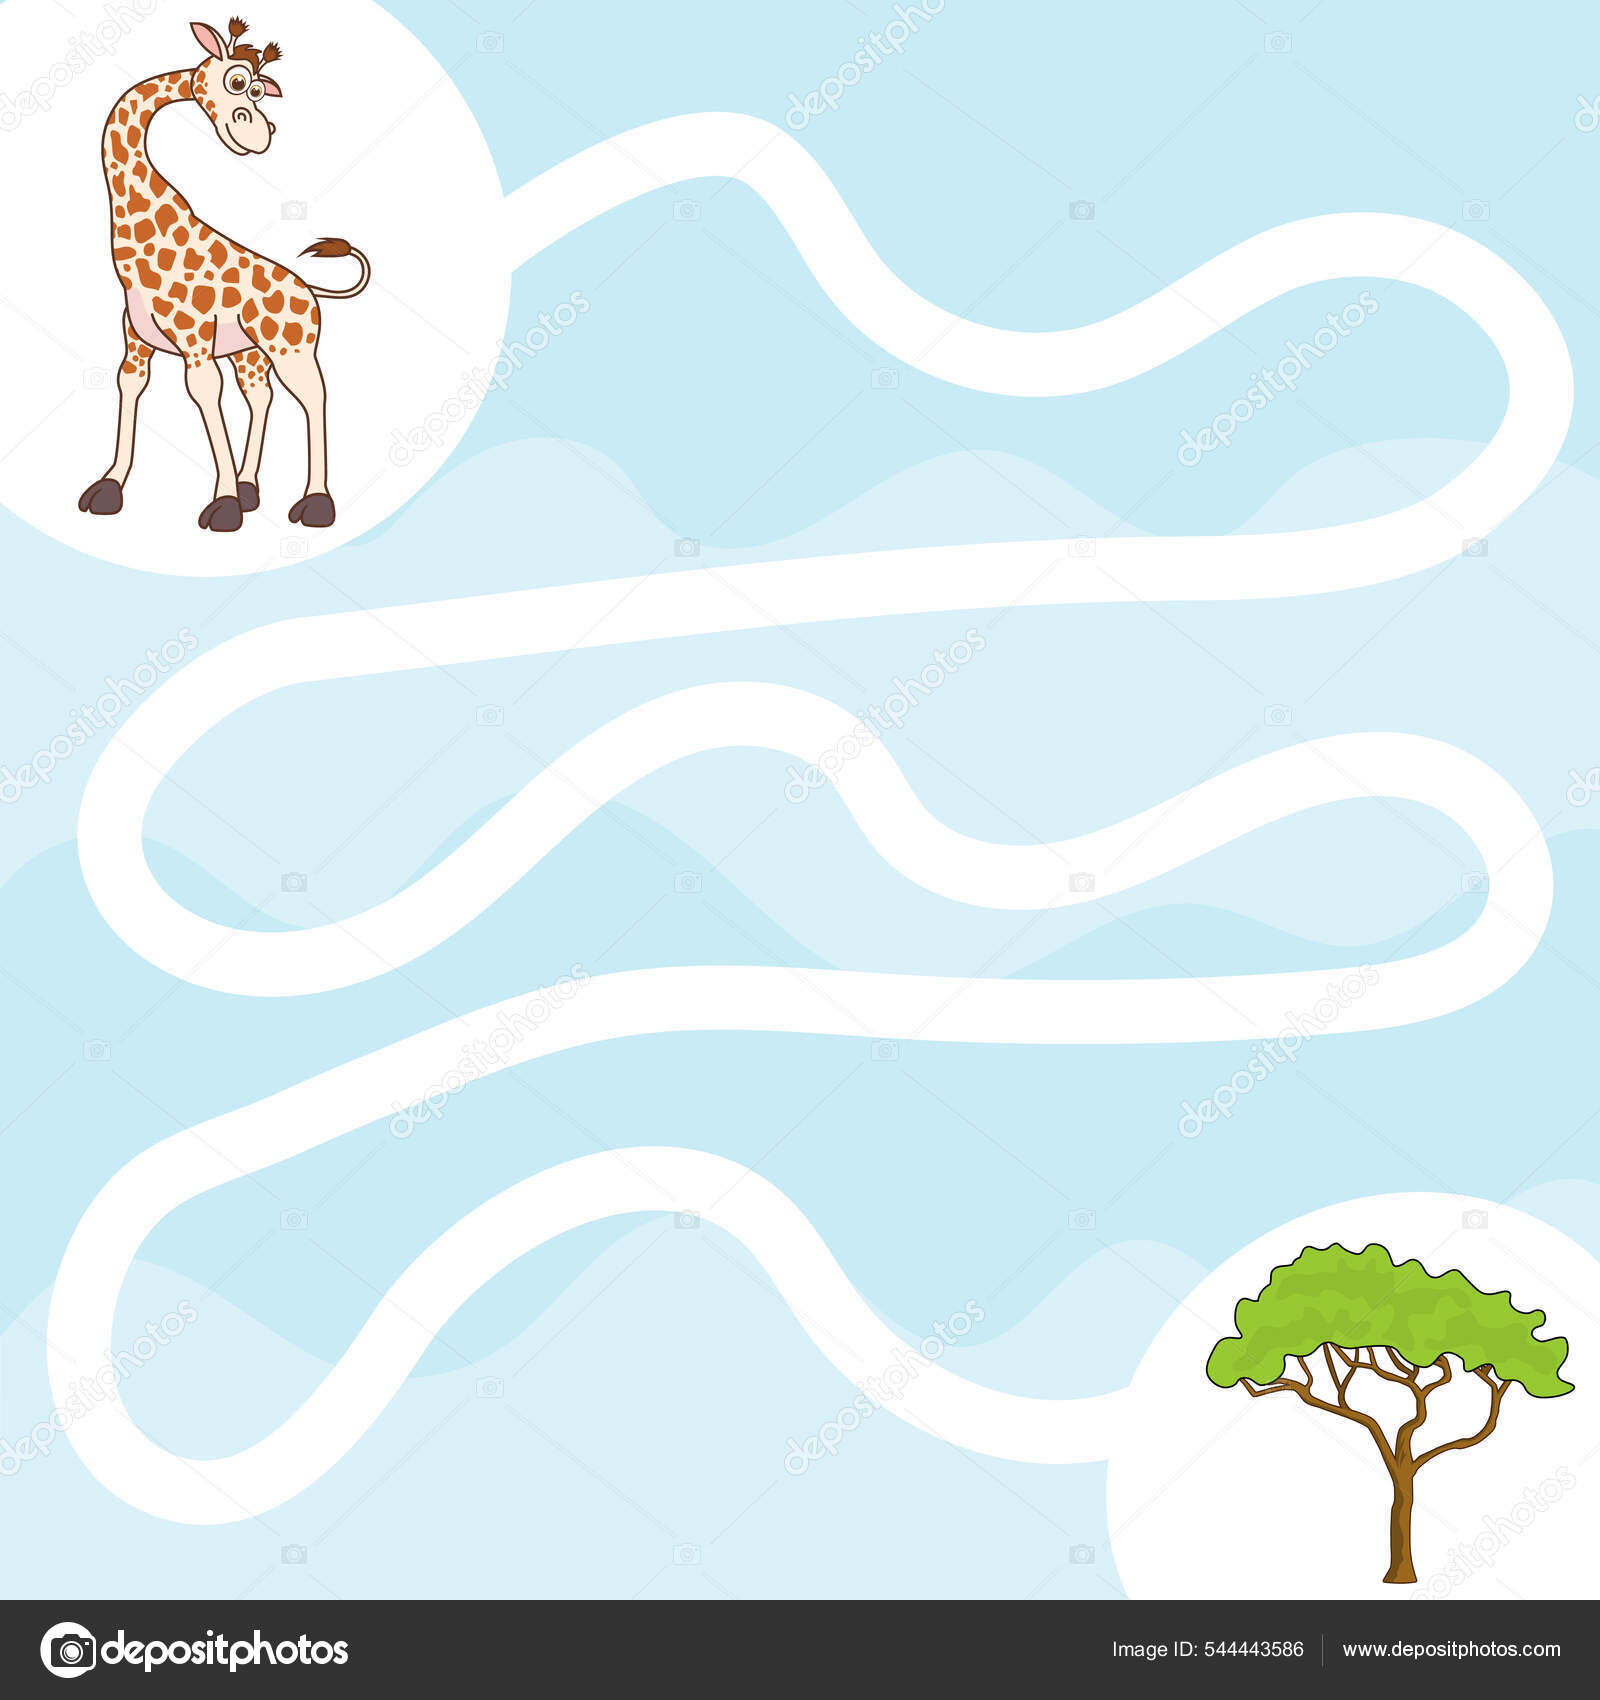 Jogo de quebra-cabeça para crianças com ilustração fofa do tigre